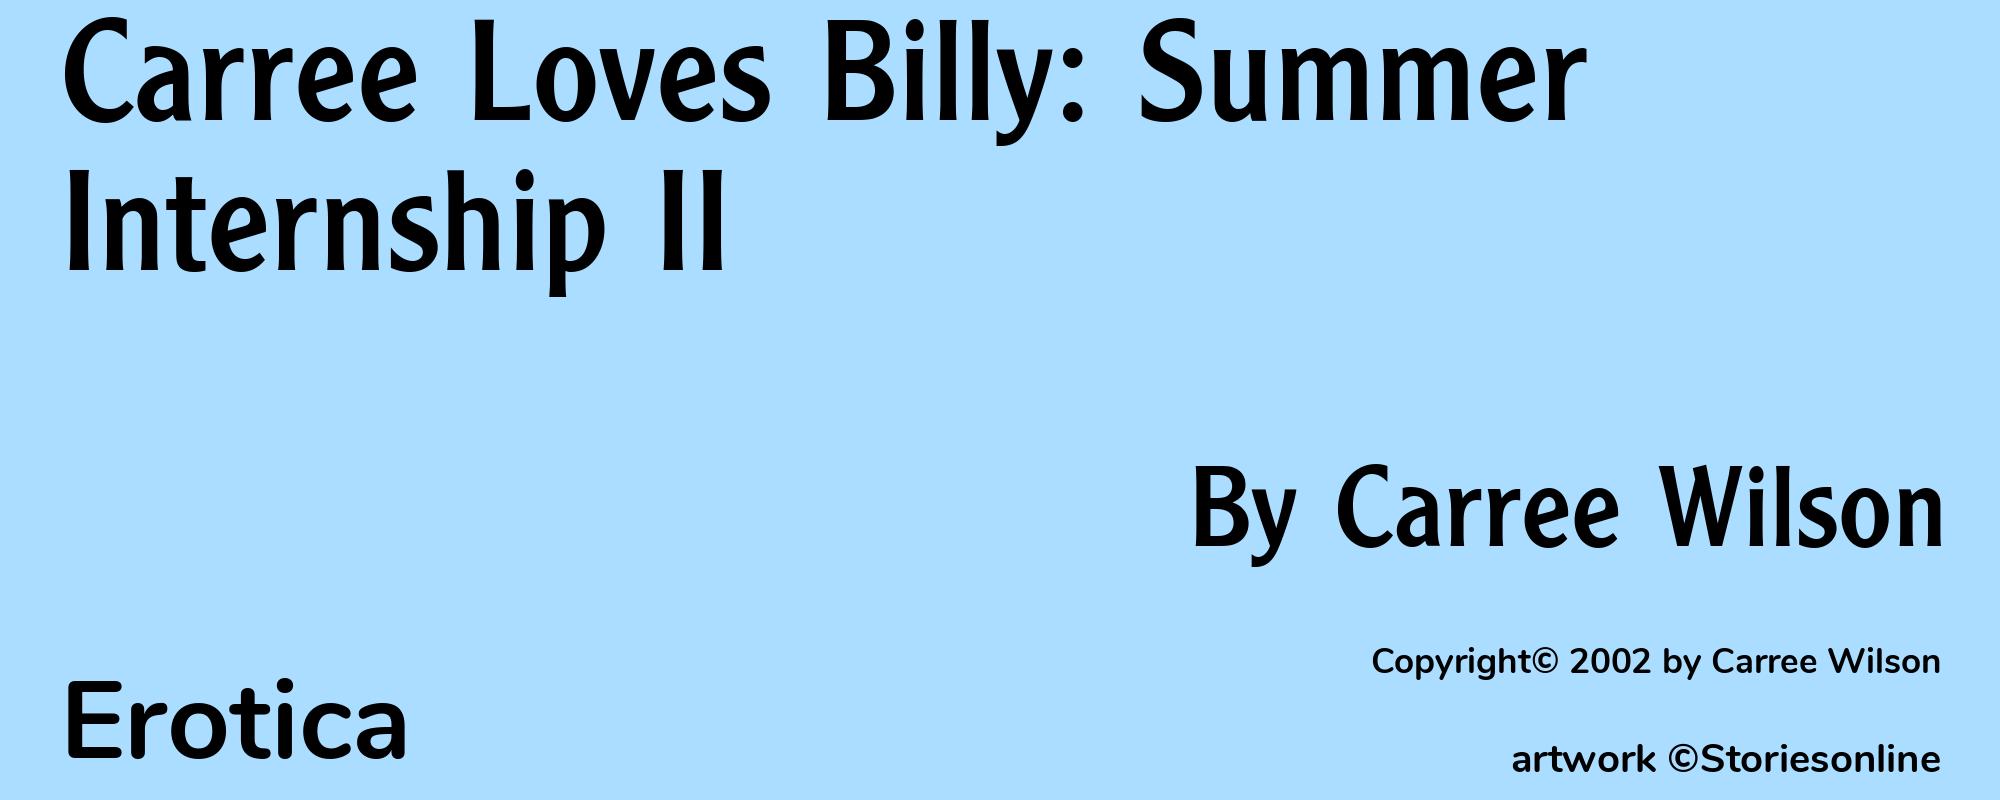 Carree Loves Billy: Summer Internship II - Cover